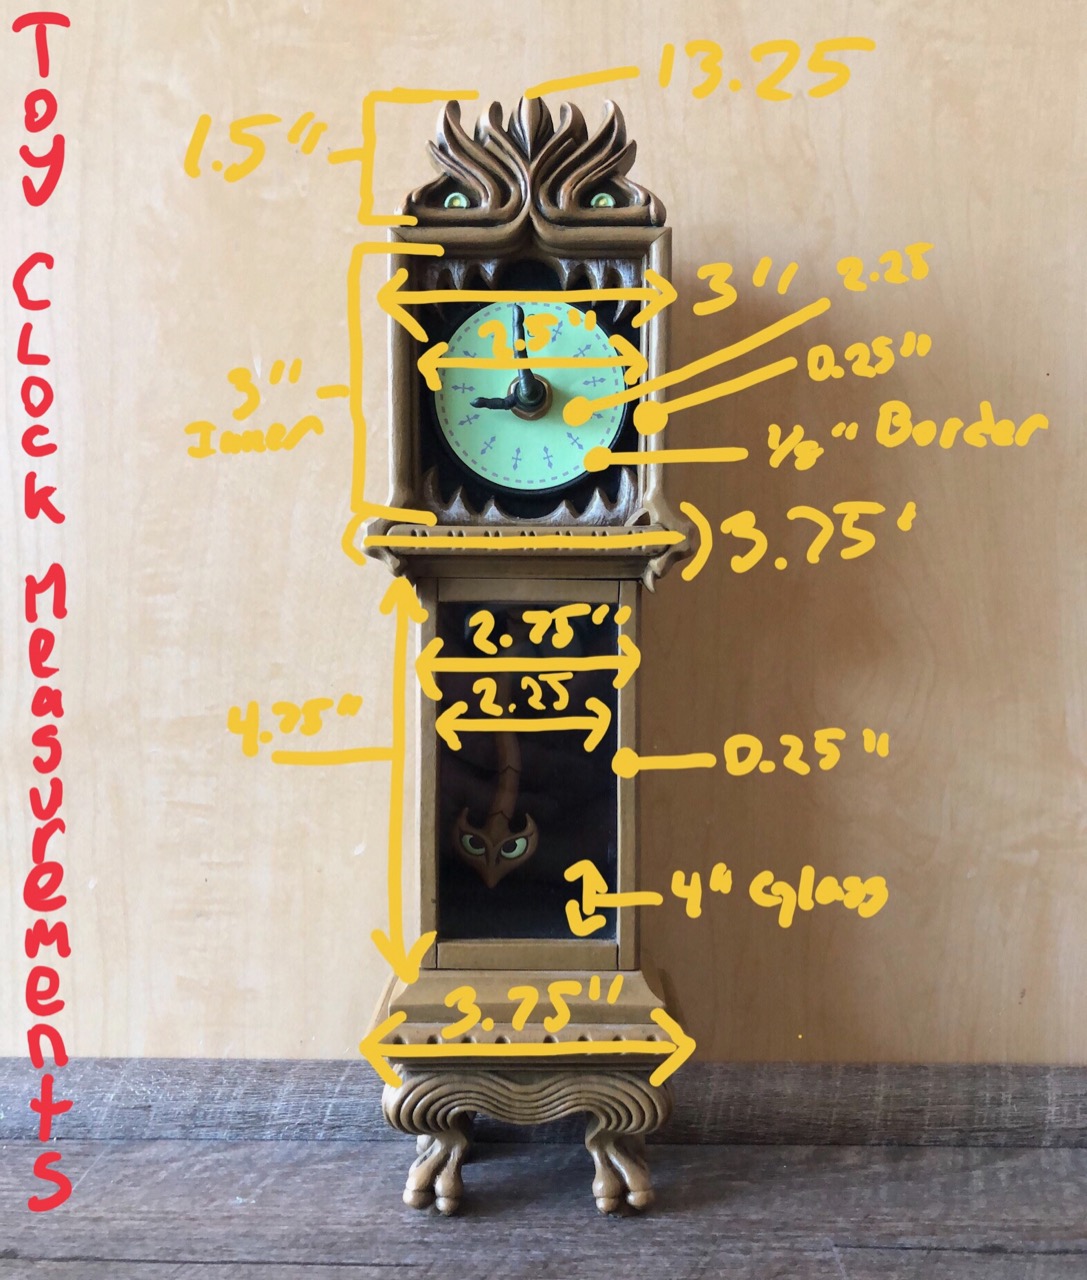 measurements_toyclock.jpg